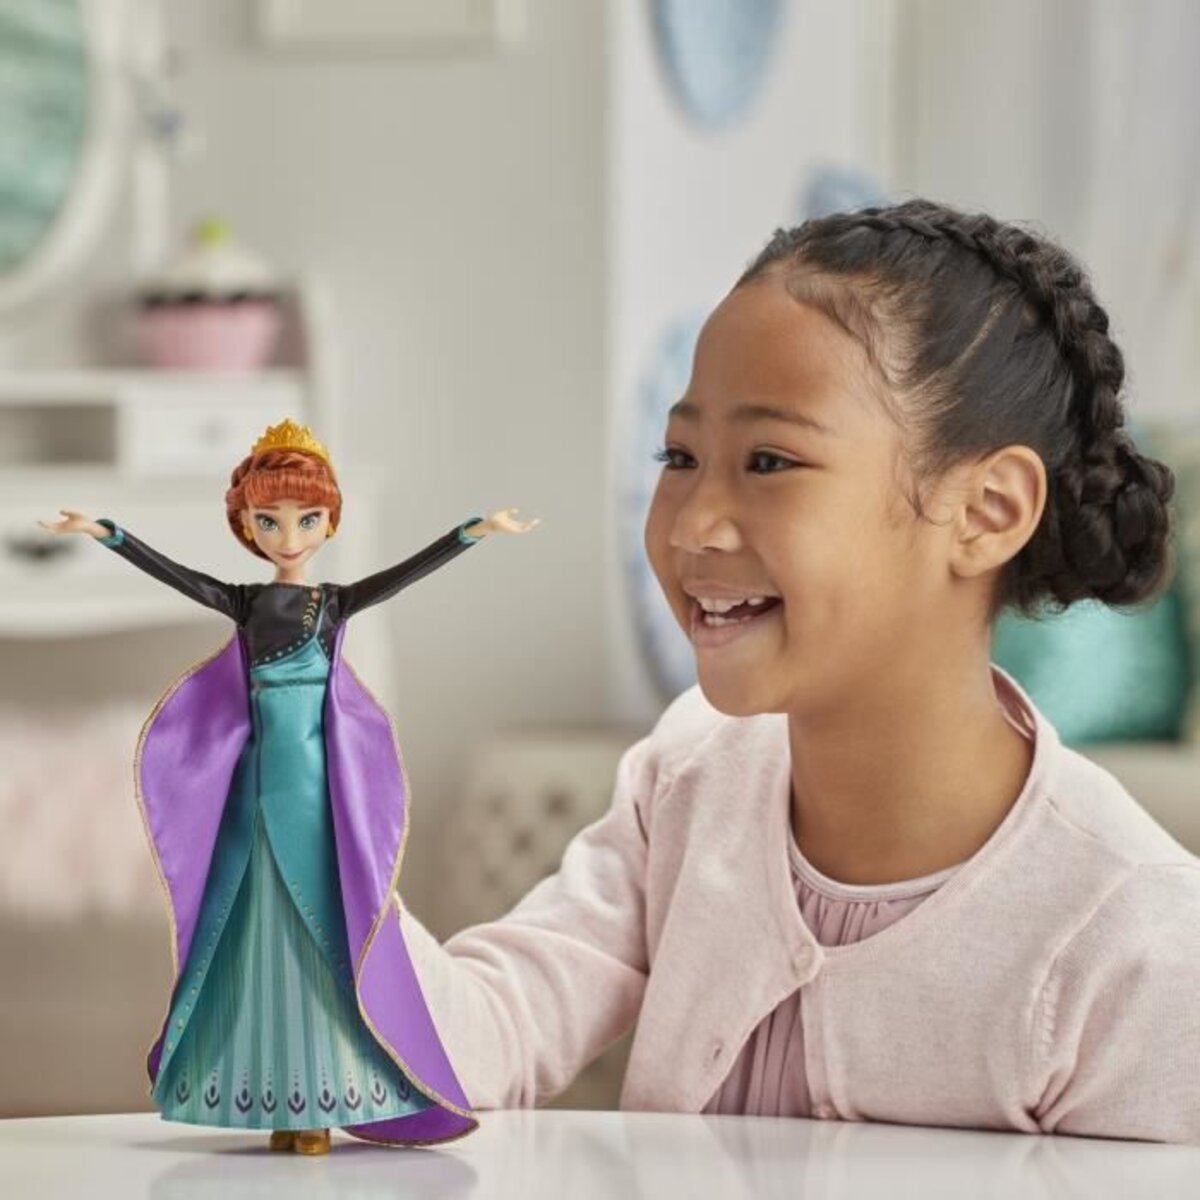 Disney la reine des neiges 2 – poupée princesse disney anna robe lumineuse  - 26 cm - La Poste